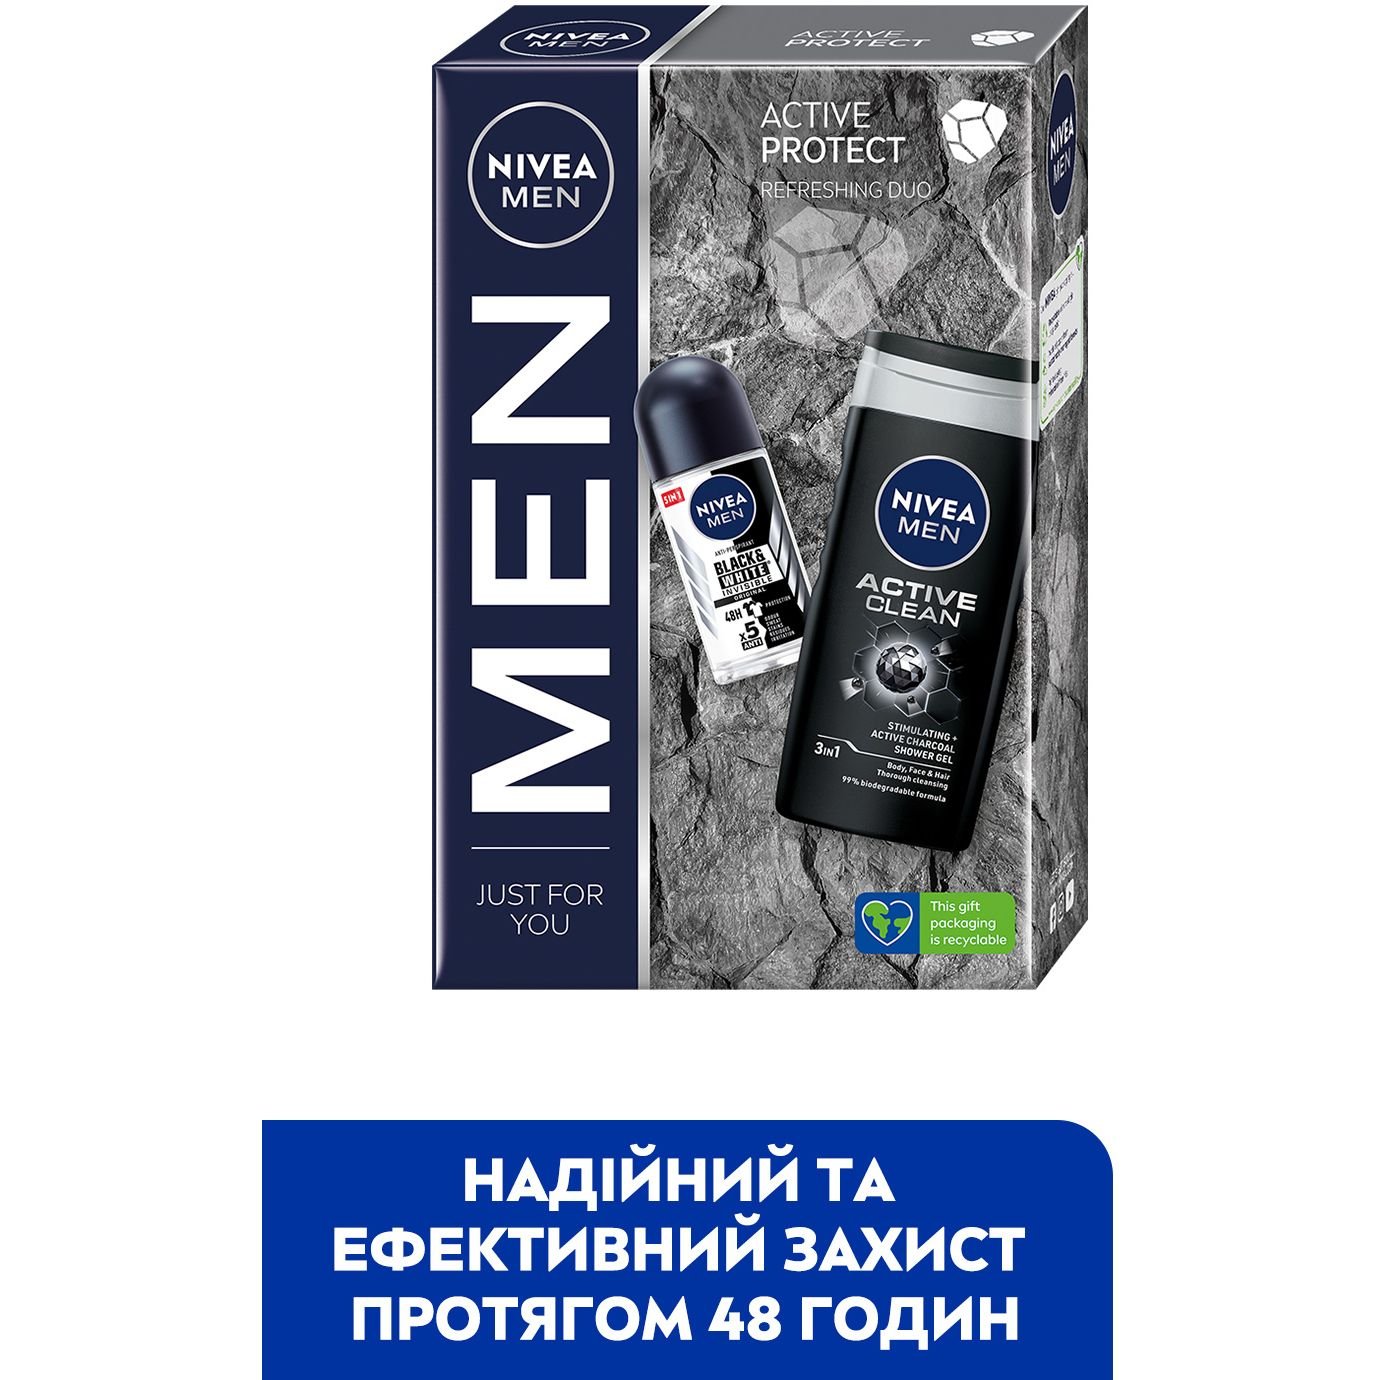 Набор для мужчин Nivea: Гель для душа Men Активная очистка 250 мл + Антиперспирант Men Черное и белое Невидимый классический 50 мл - фото 4